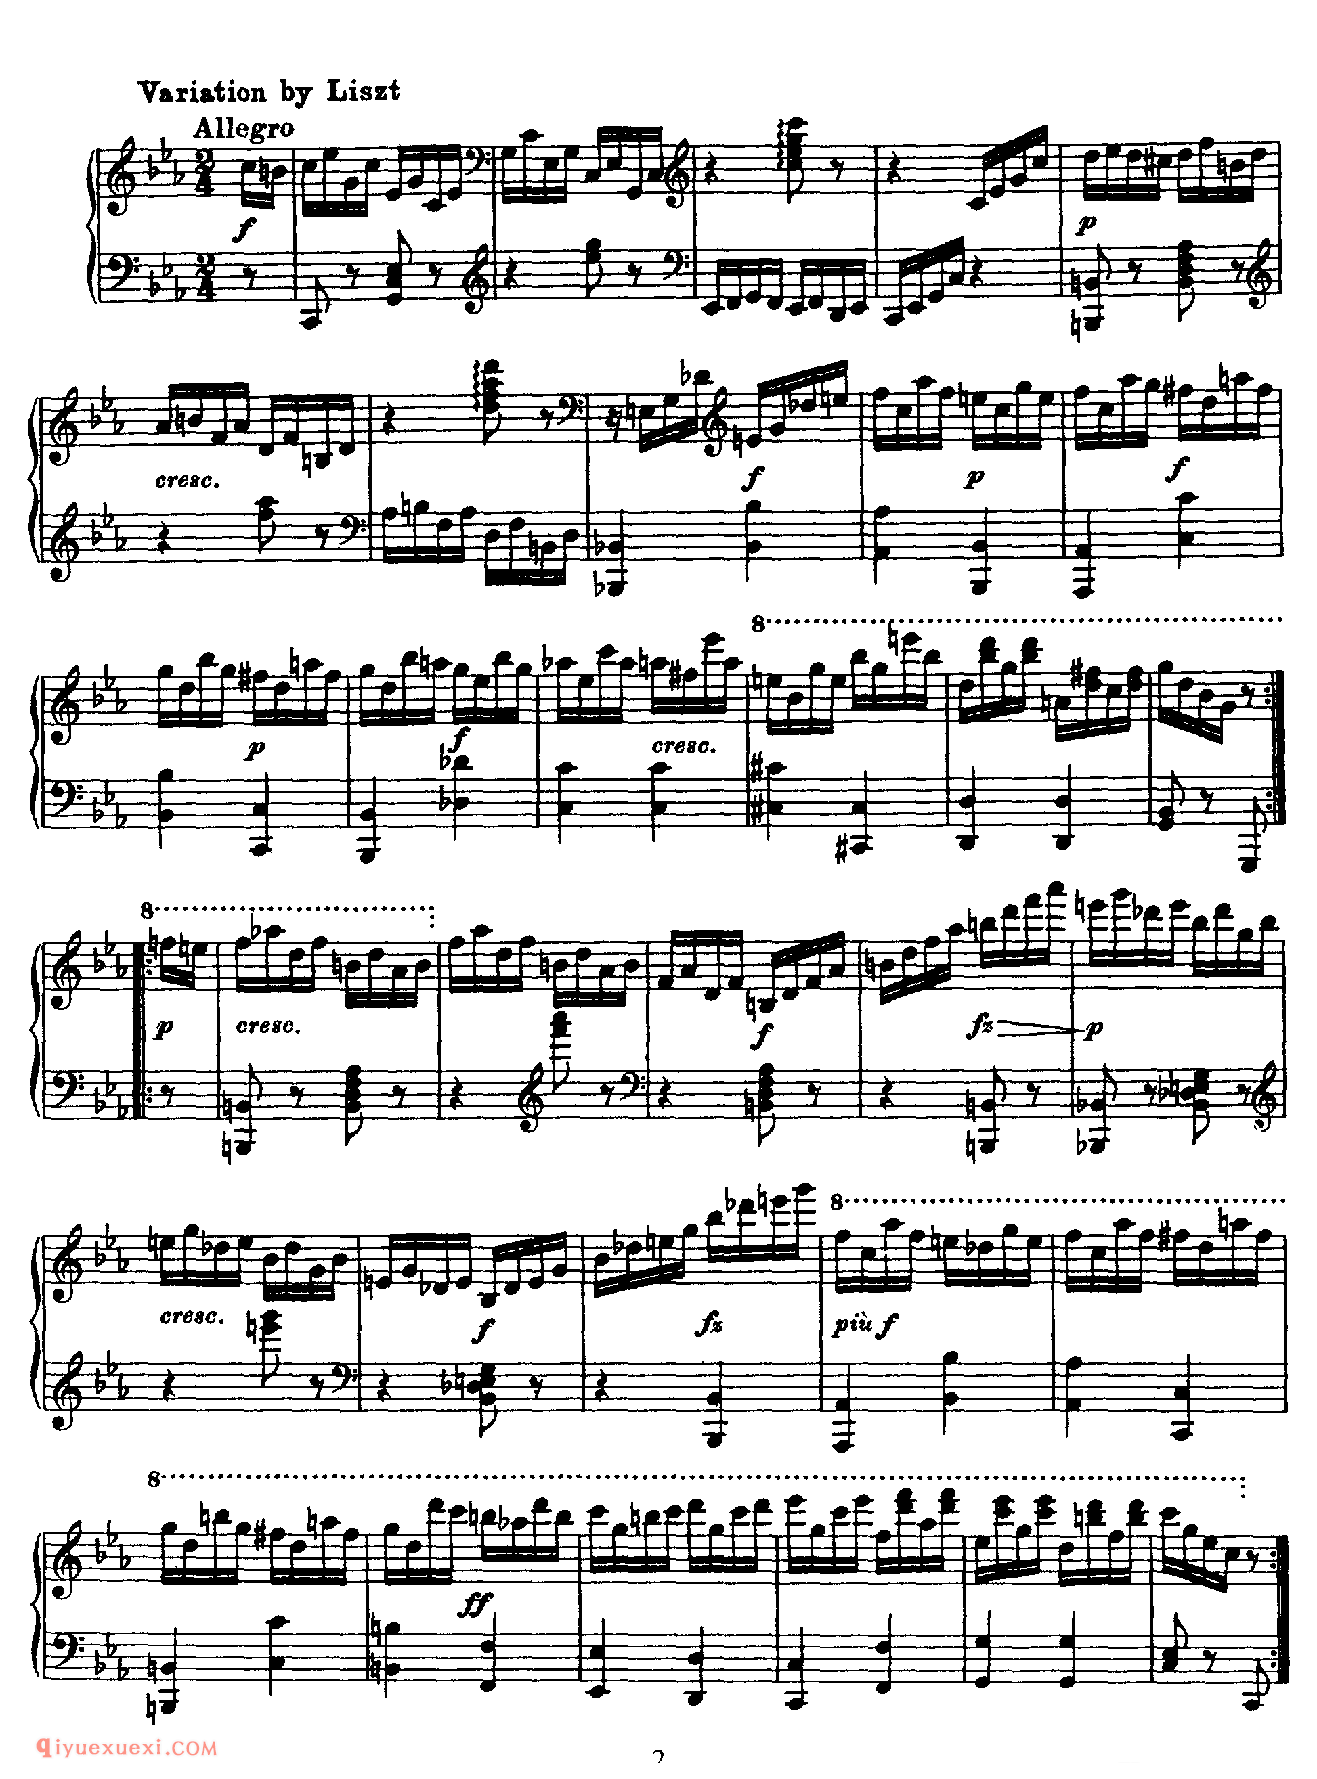 李斯特《迪亚贝利圆舞曲主题变奏曲》Variation on a Waltz of Diabelli_李斯特钢琴乐谱